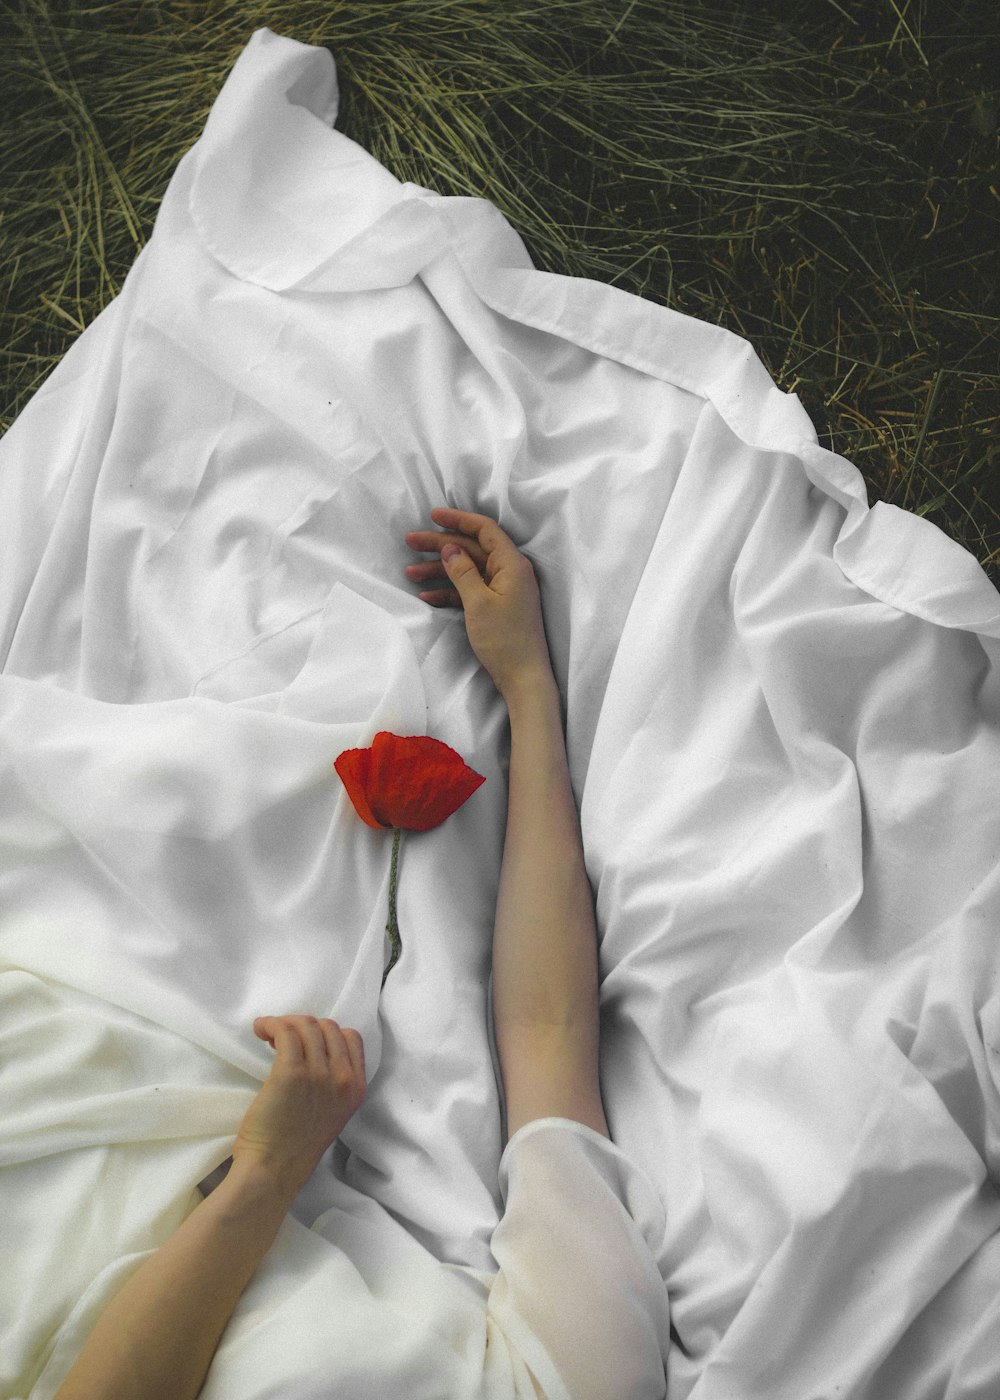 pessoa no manto branco segurando a rosa vermelha